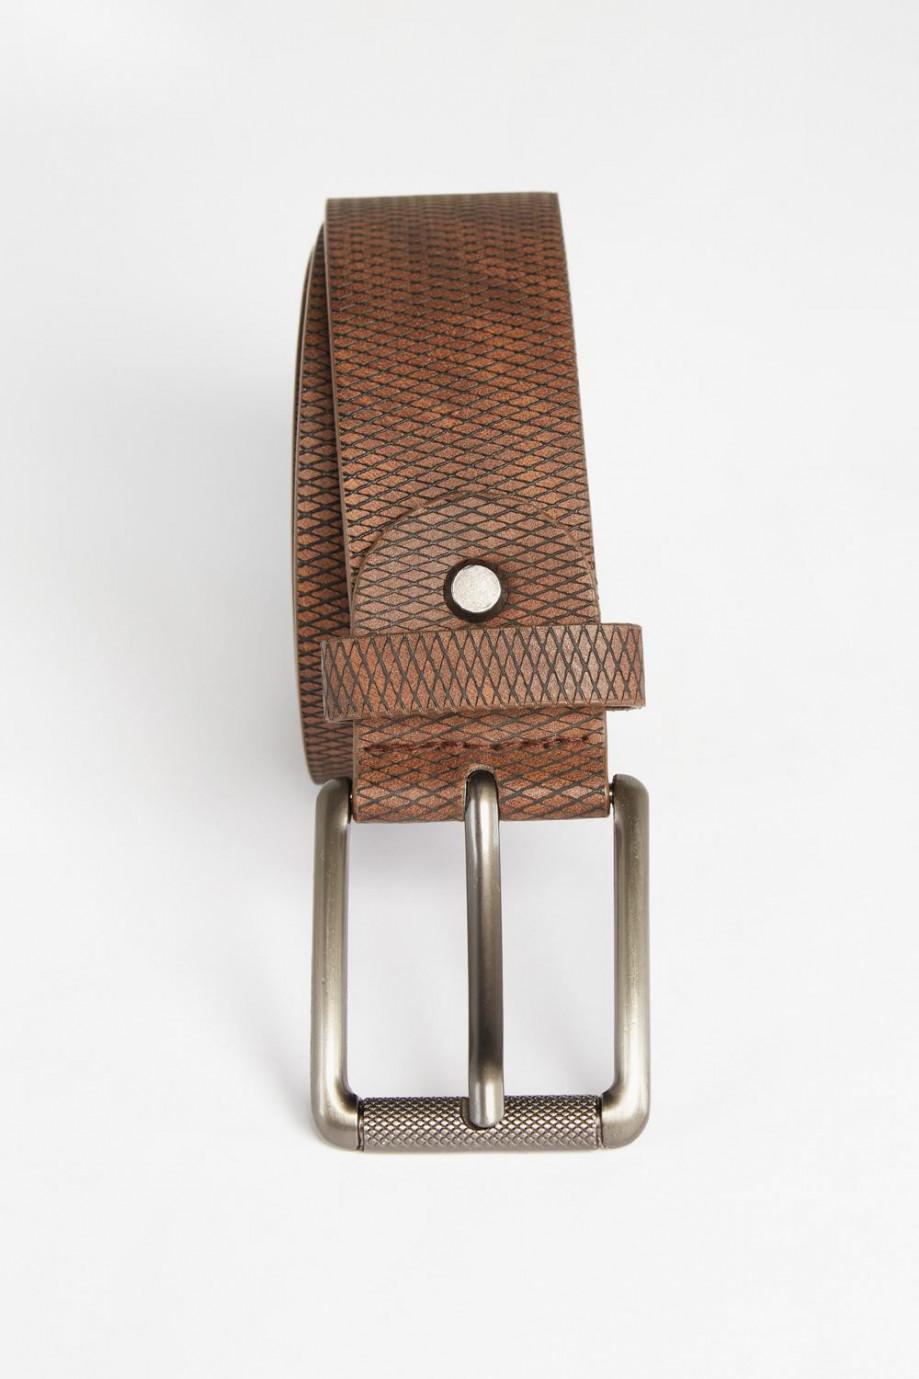 Este cinturón color café oscuro para hombre con textura y hebilla metálica cuadrada y esta hecho en sintetico, es exclusivo de K